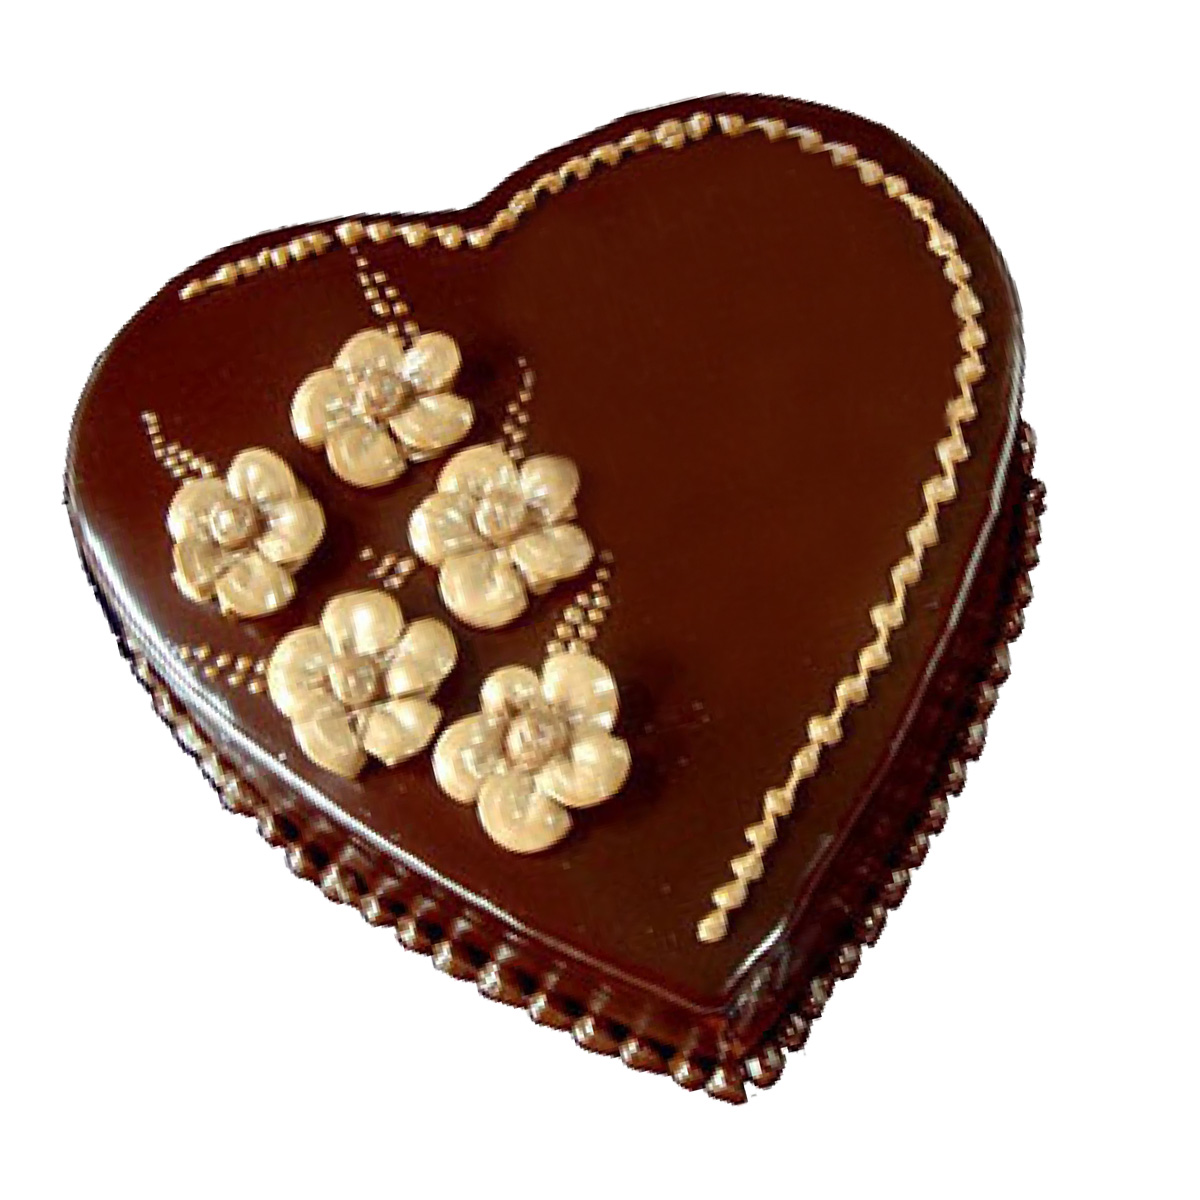 heart-shape-chocolate-cake